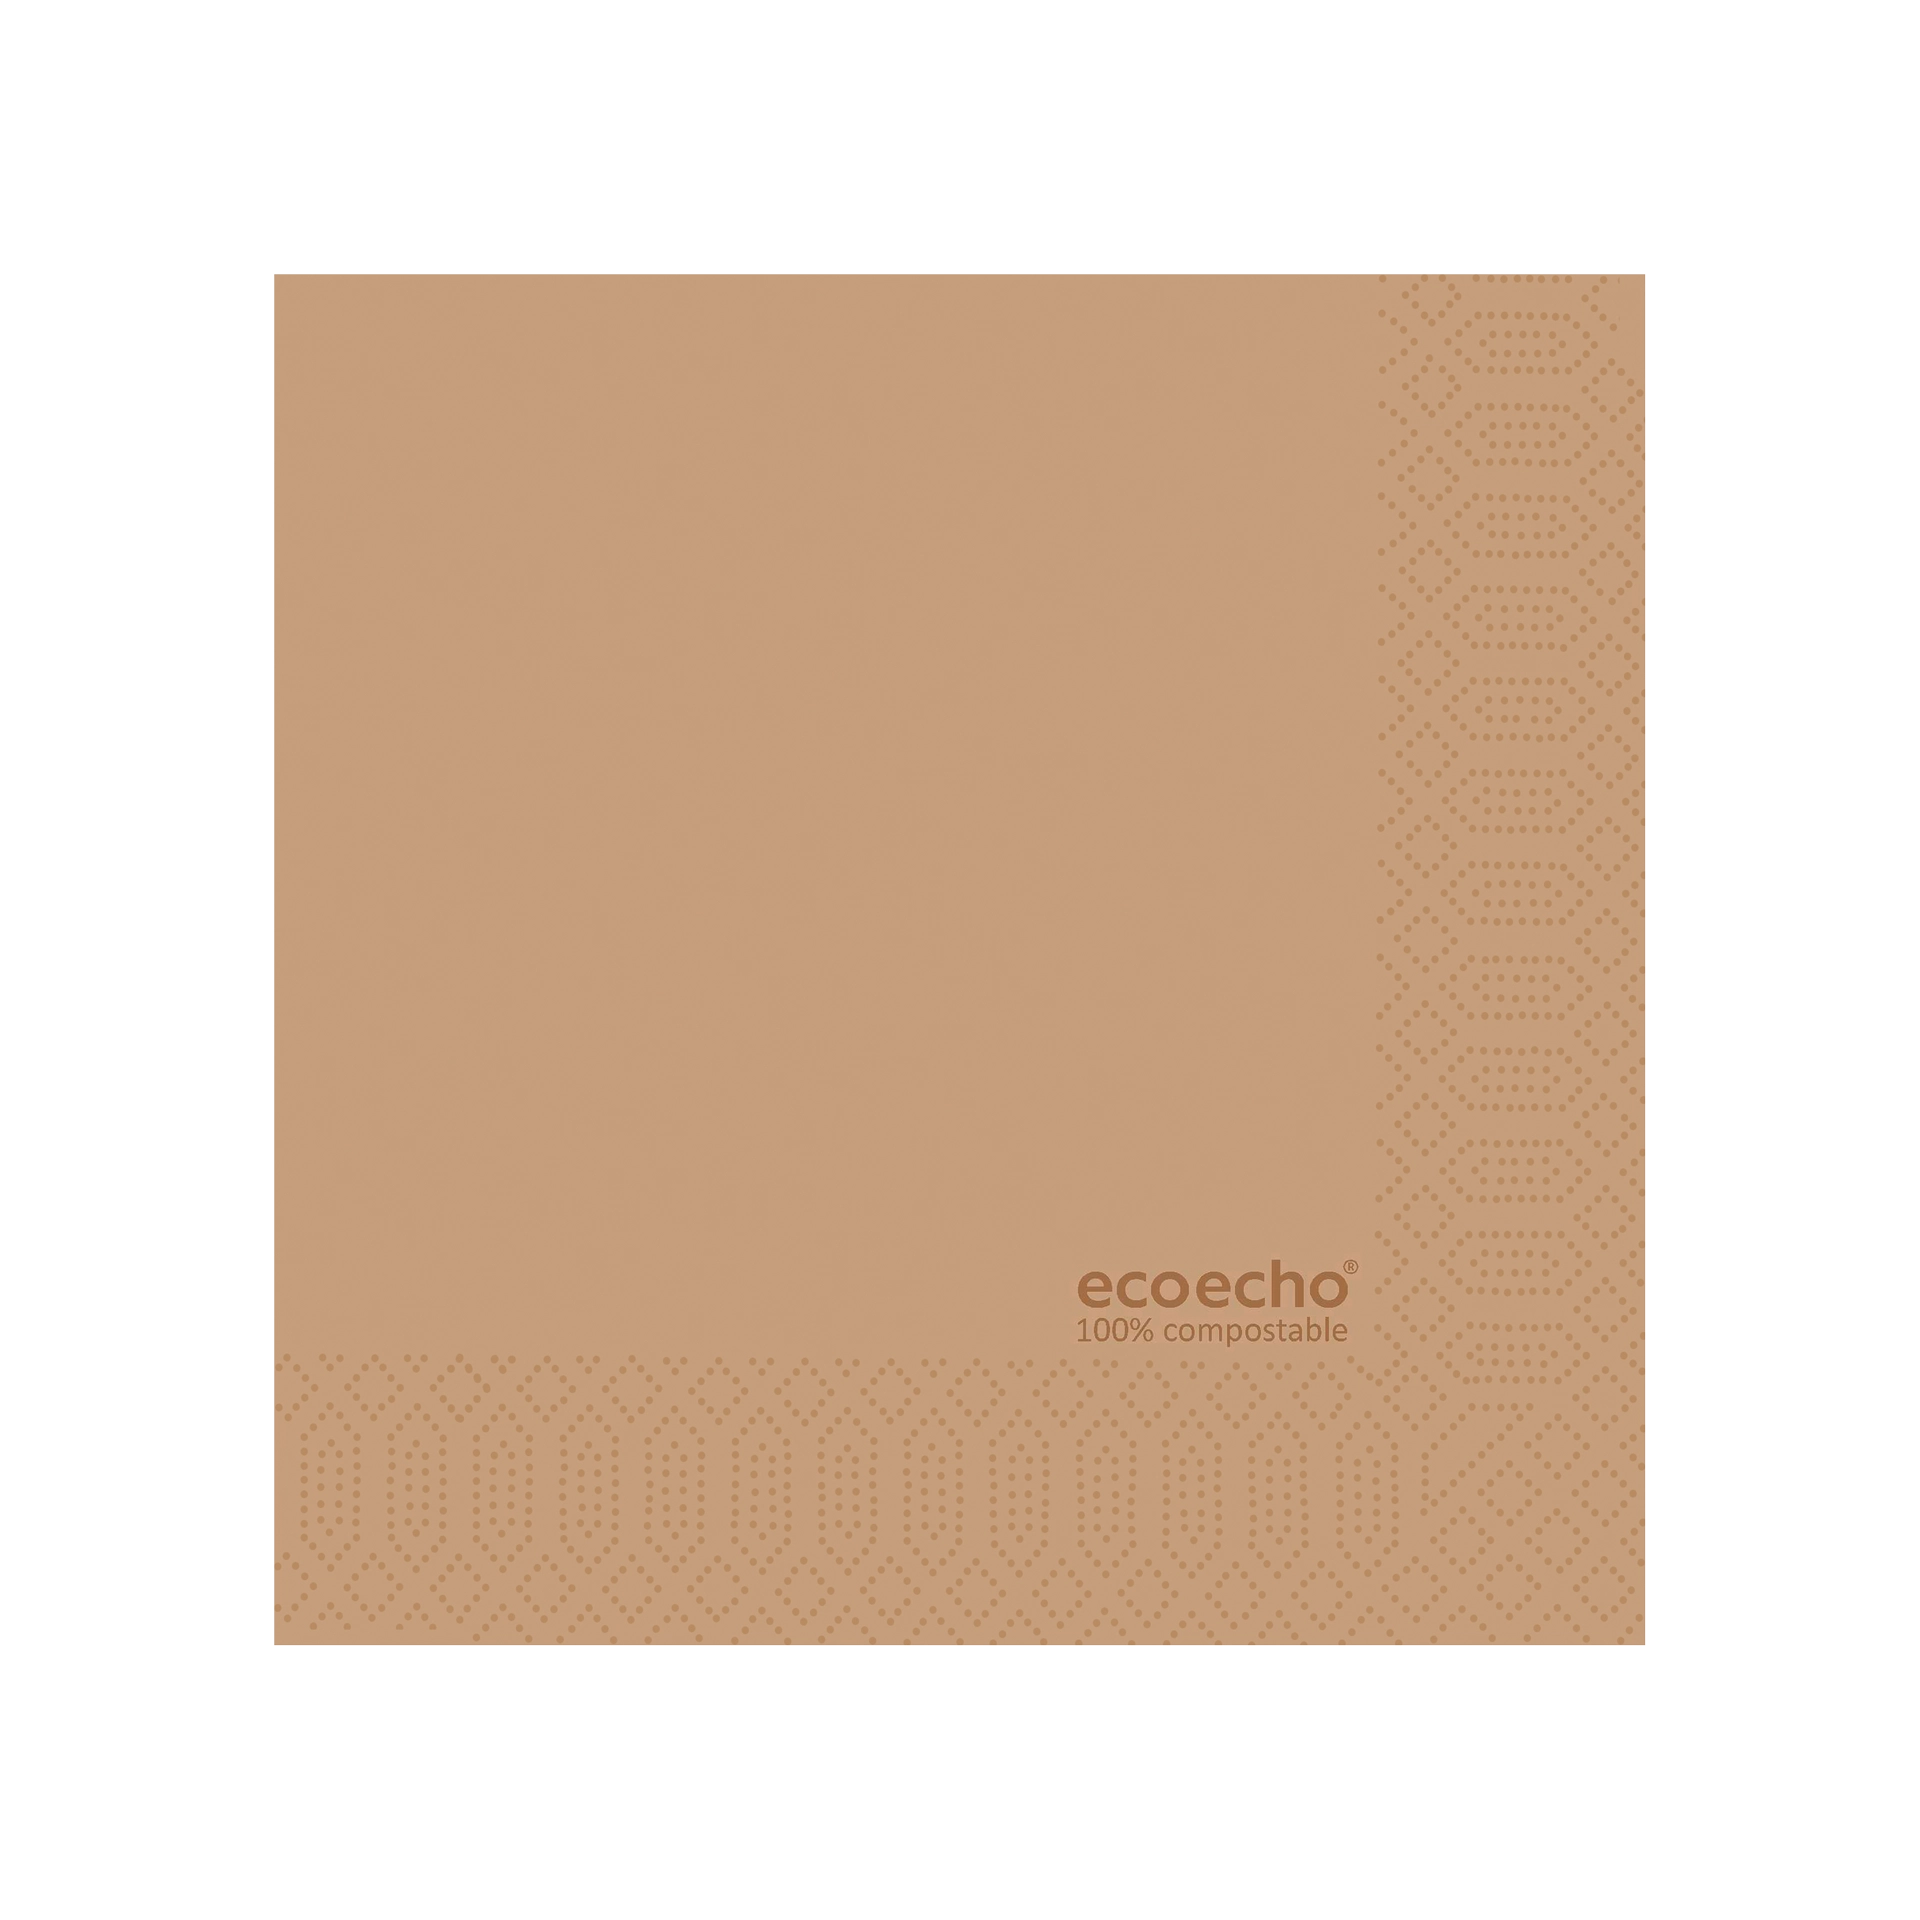 Serviette | ecoecho Zellstoff 2lg. | braun 24x24 cm   